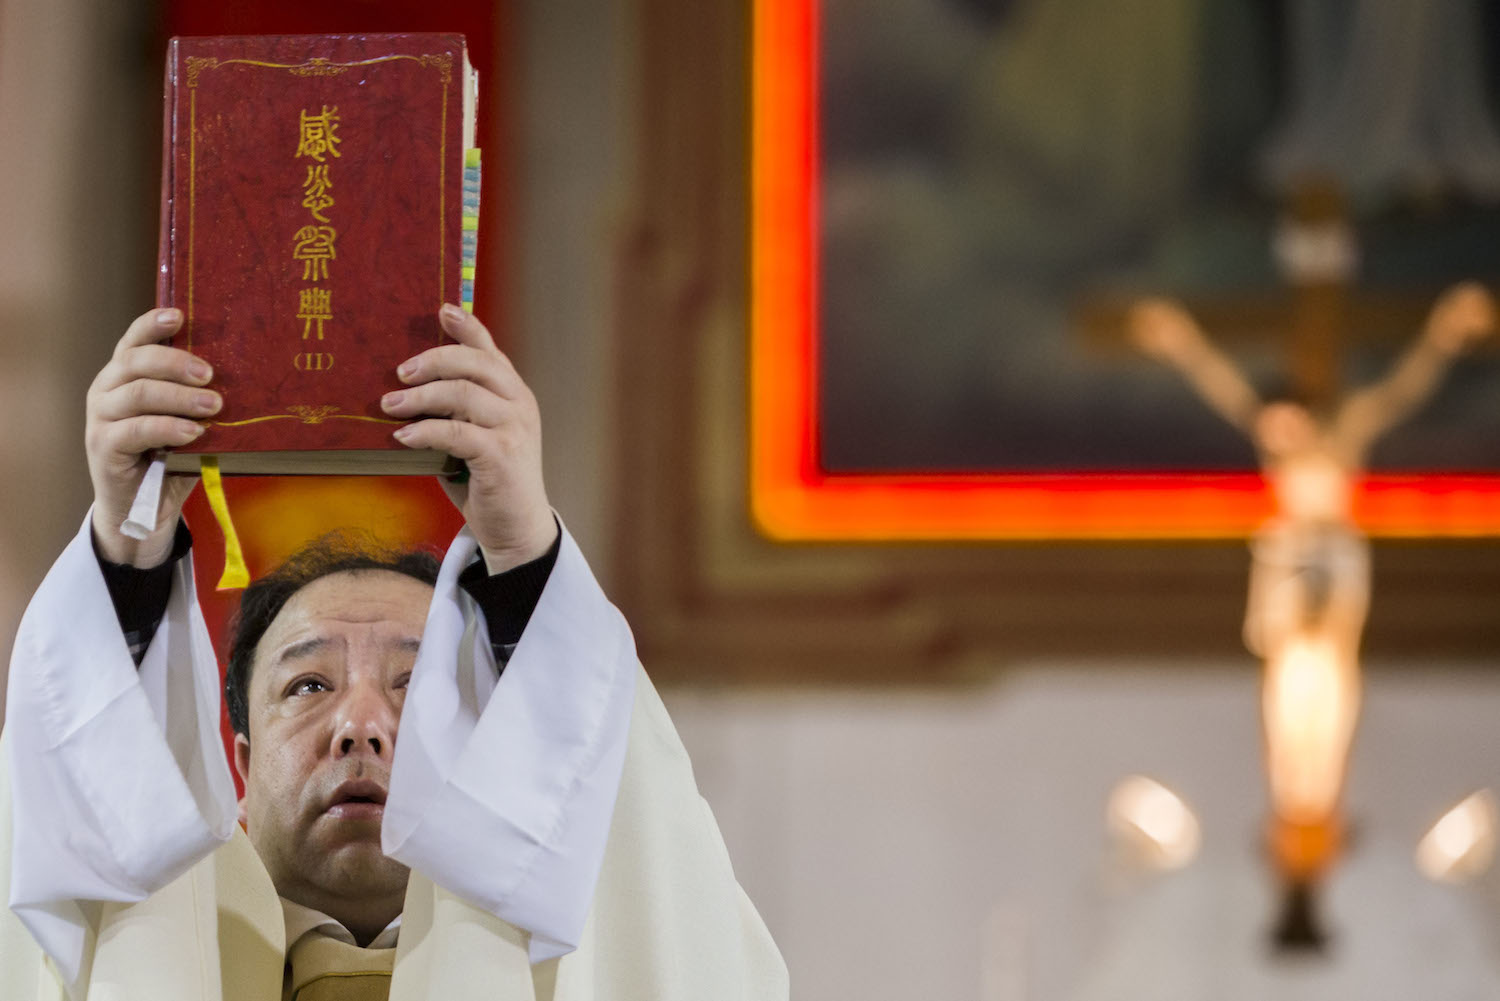 चीन में ईसाइयों को मृत कम्युनिस्ट सैनिकों के लिए प्रार्थना करने के लिए मजबूर किया गया